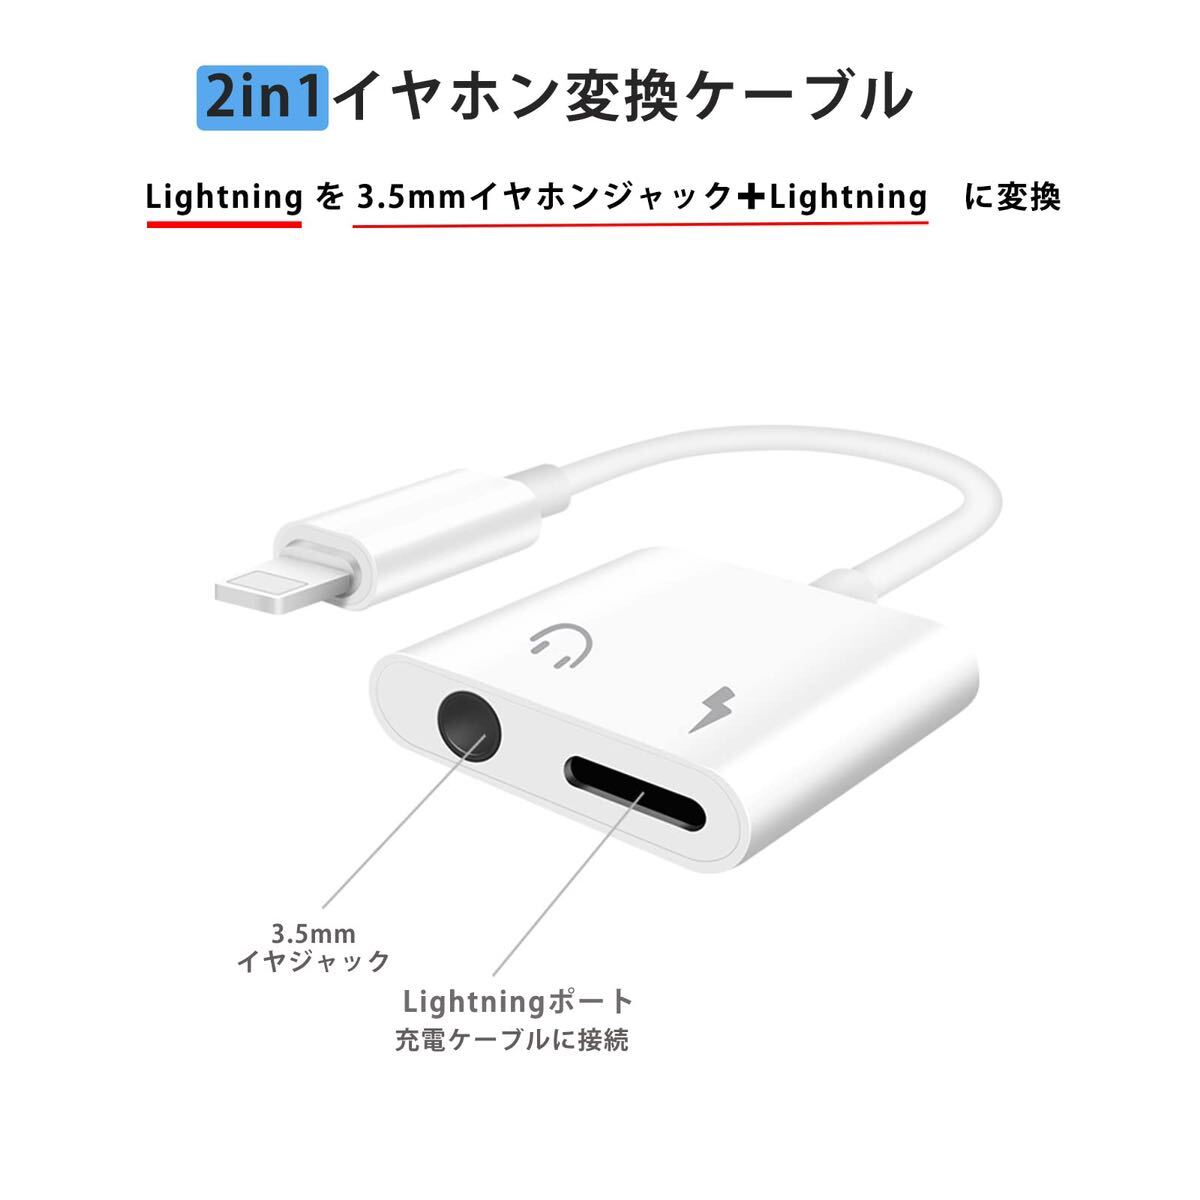 iphone イヤホンアダプタ 【Apple MFi認証品】 2in1 Lightning 3.5mm イヤホンジャック 変換 アダプタ 充電 _画像2